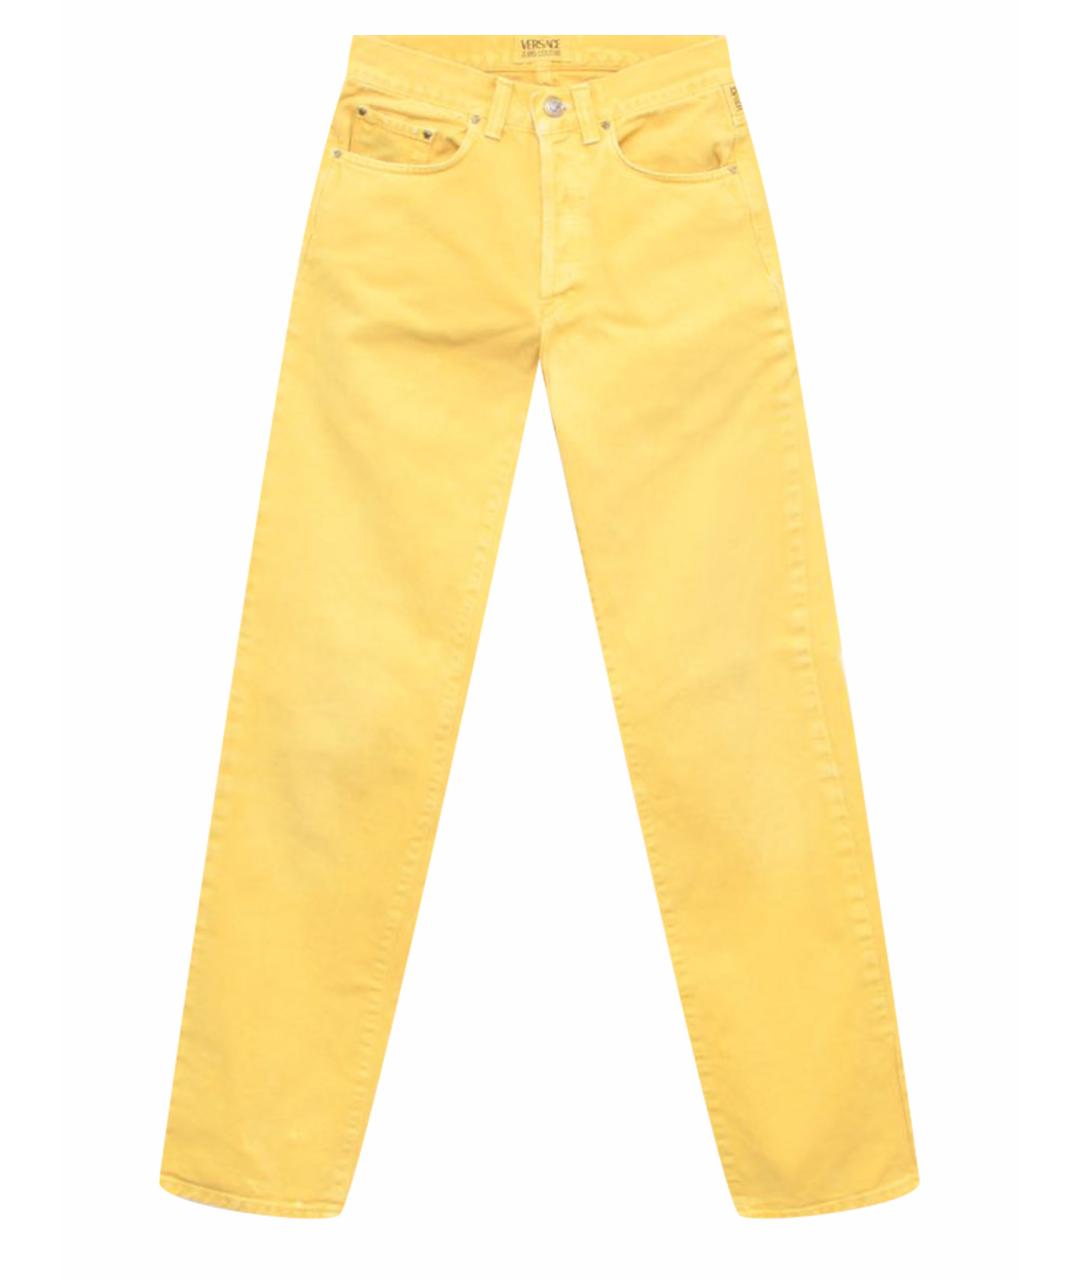 VERSACE JEANS COUTURE Желтые хлопковые джинсы, фото 1